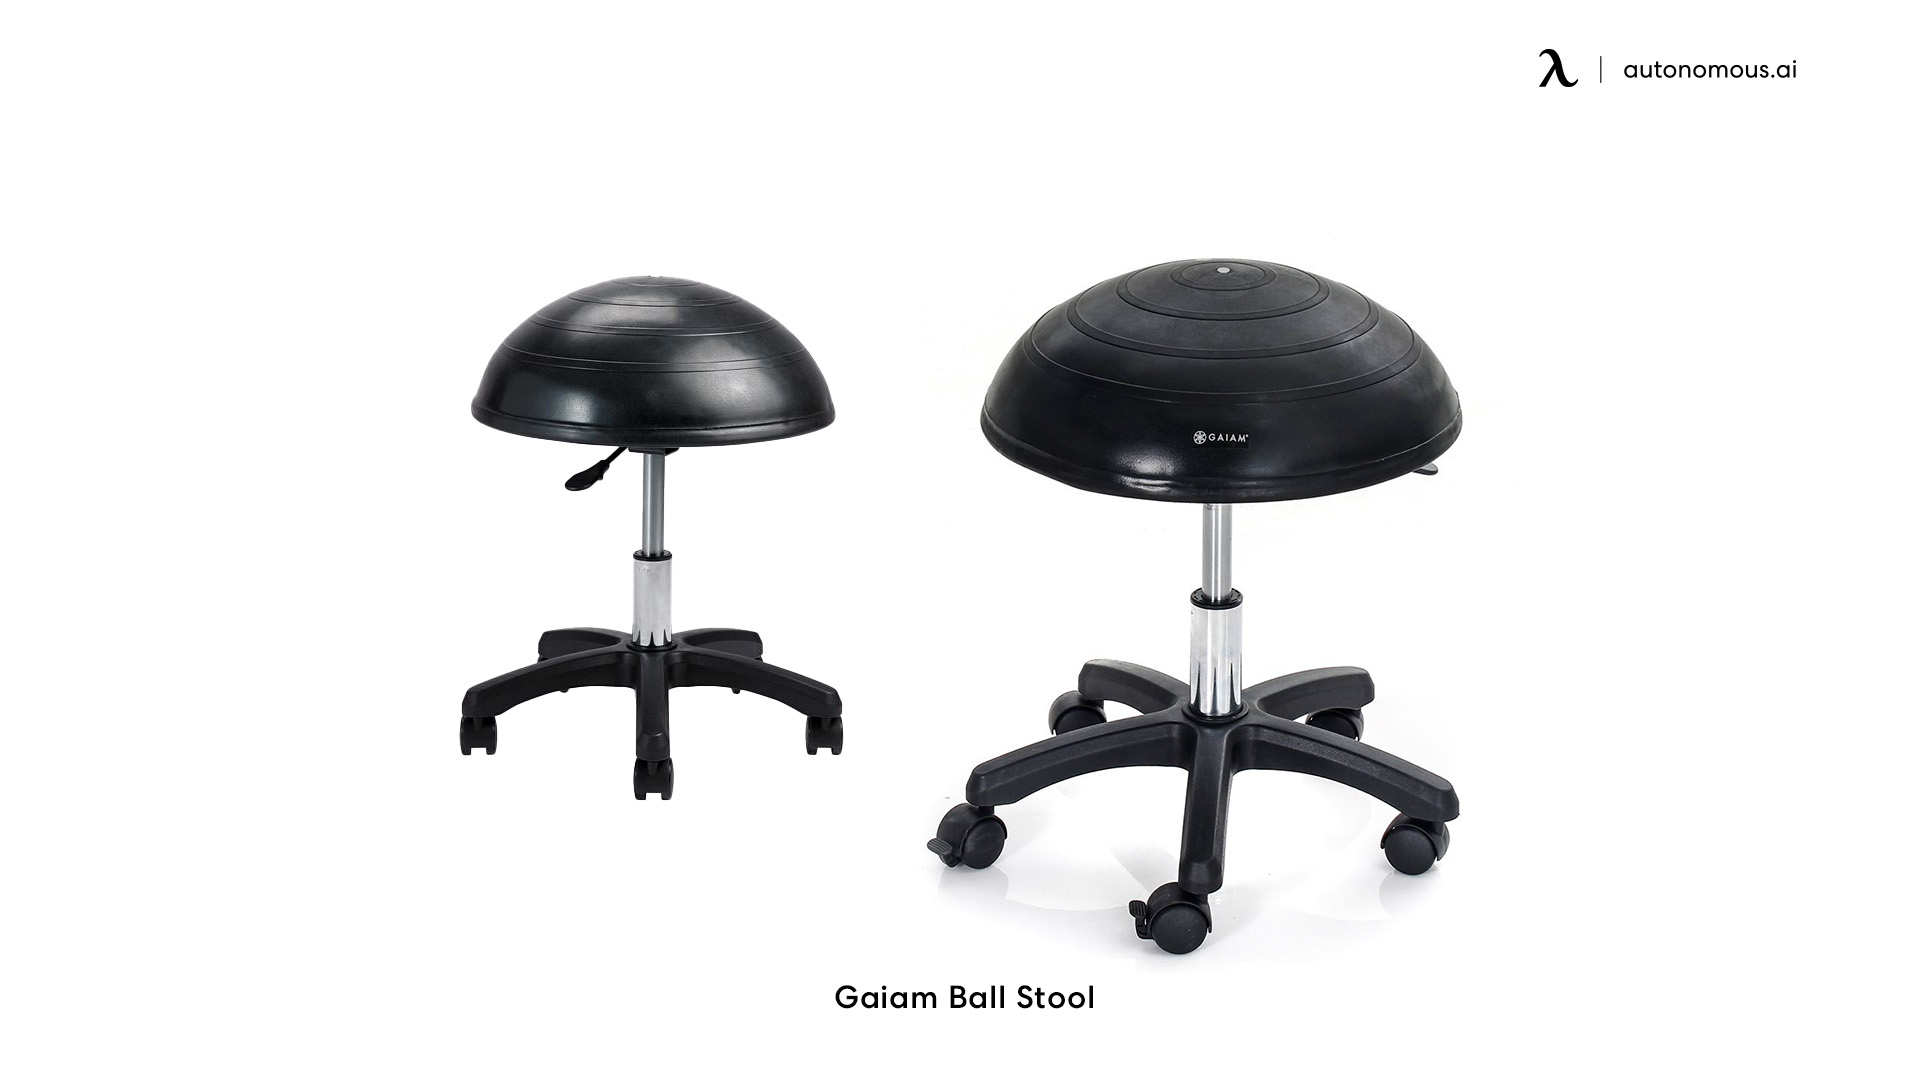 Gaiam ergonomic stool chair